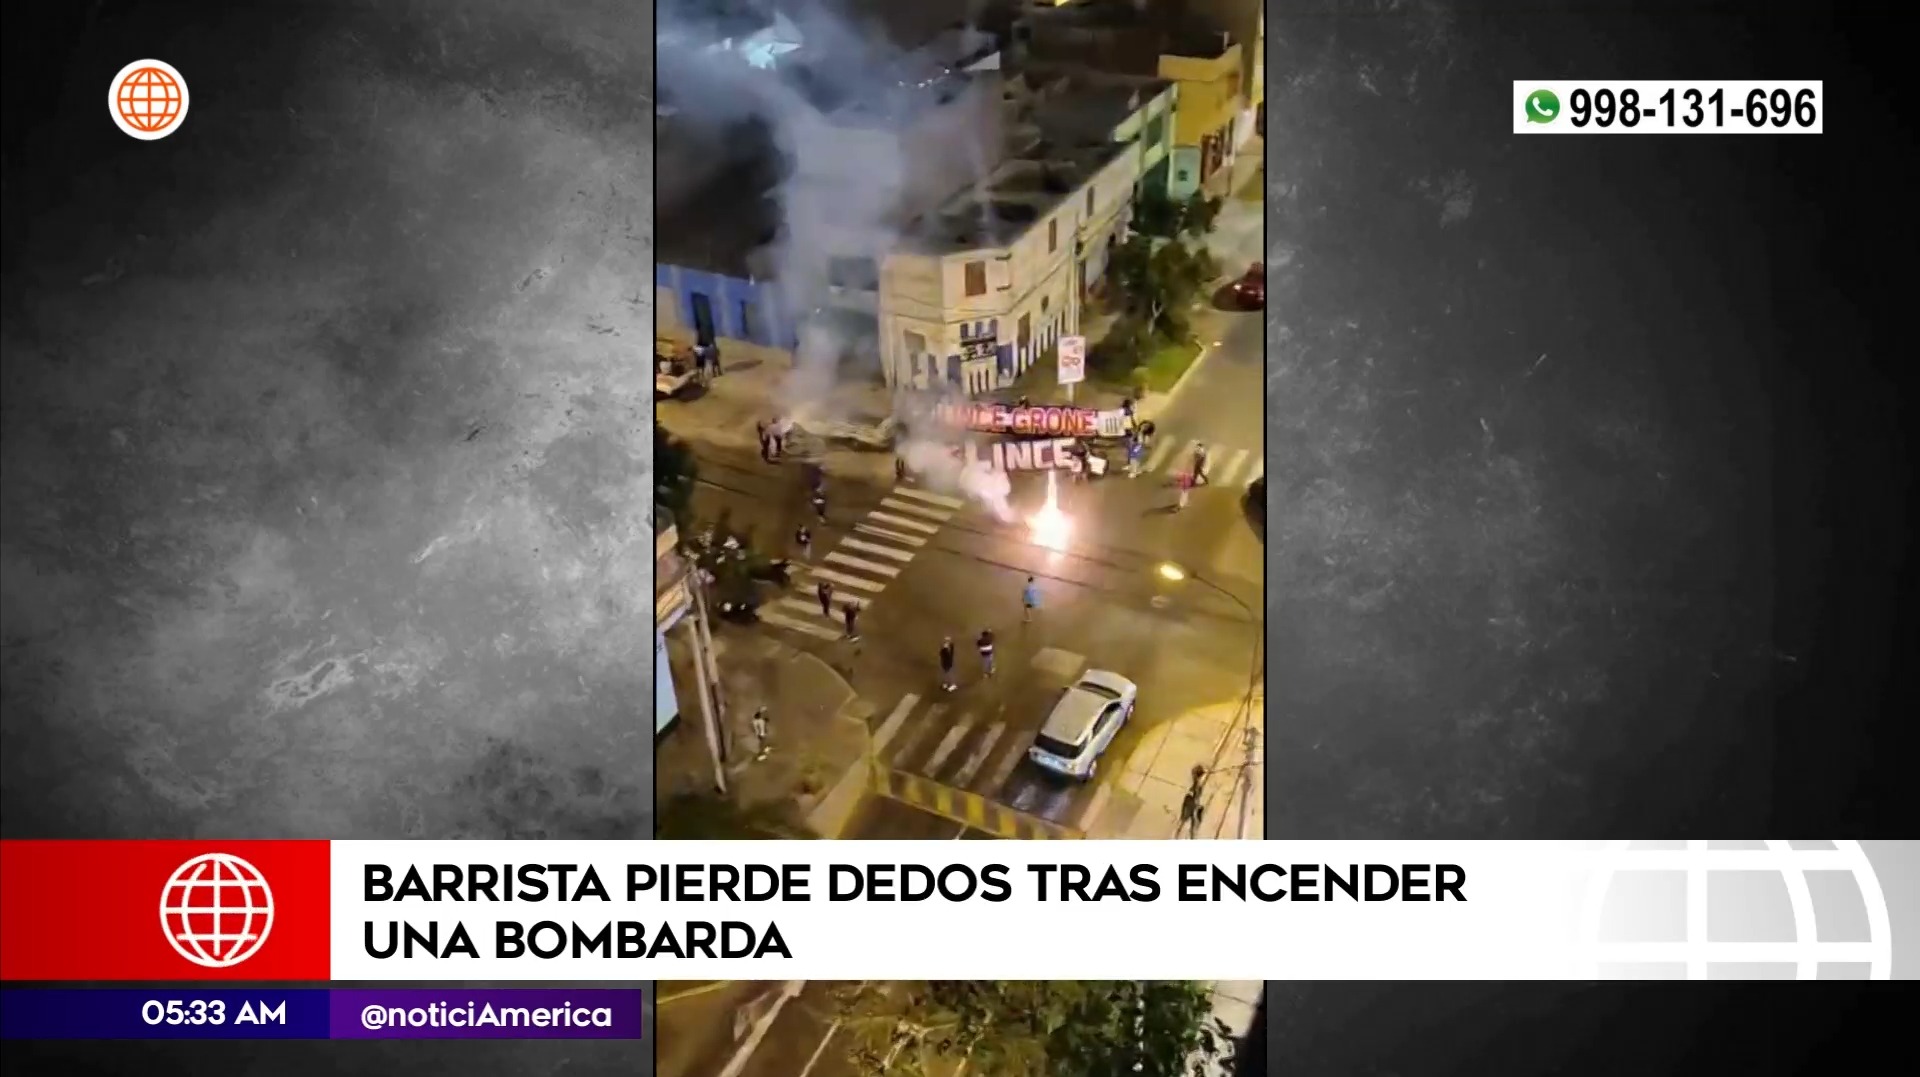 Barrista perdió dedos tras encender bombarda. Foto: América Noticias